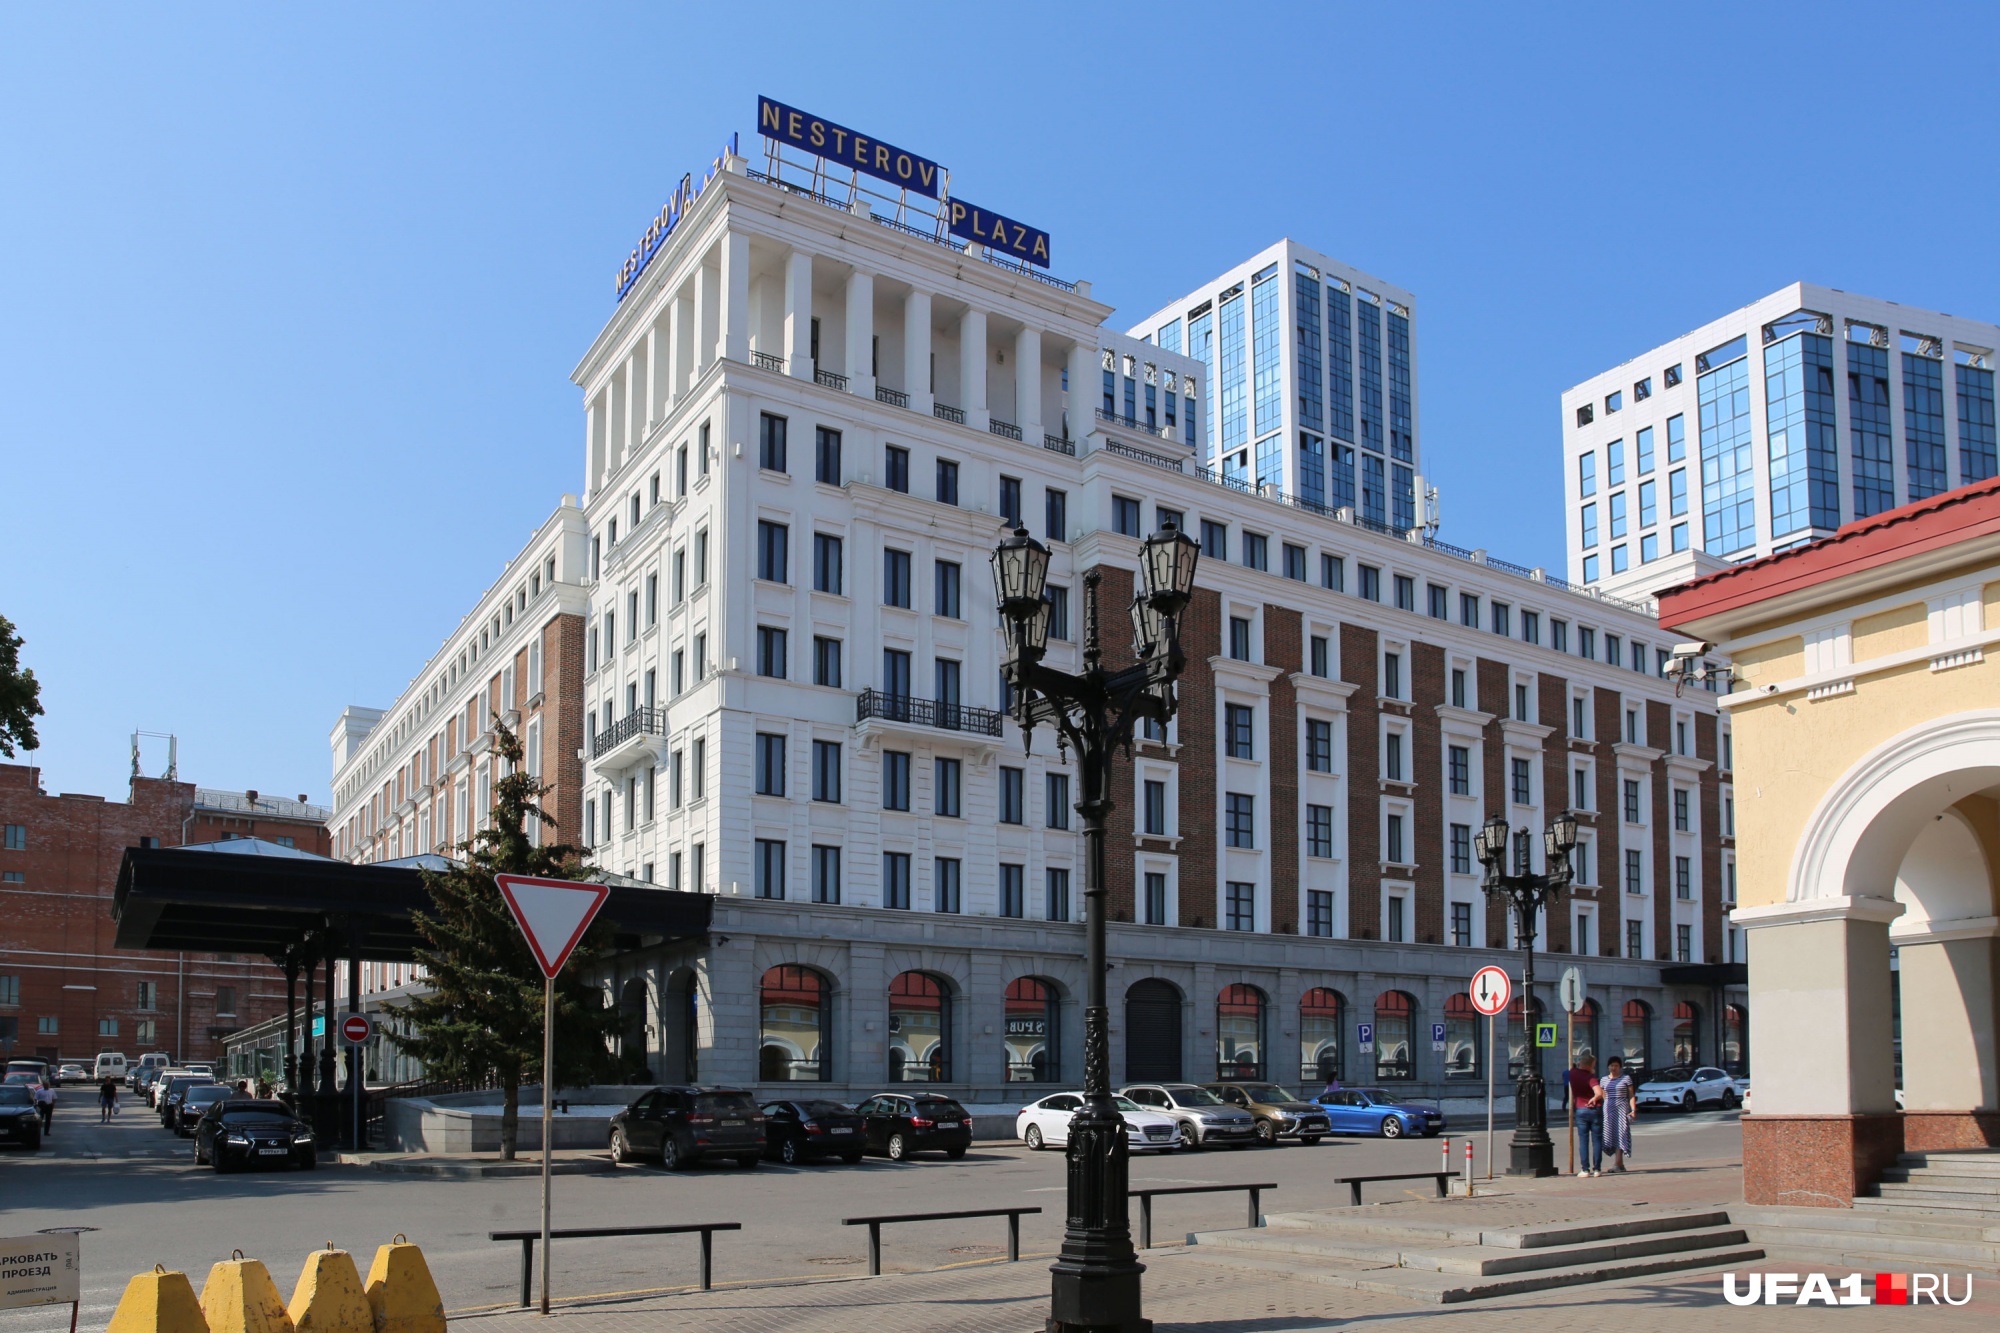 После ухода иностранных брендов отель сменил вывеску с Holiday Inn на Nesterov Plaza